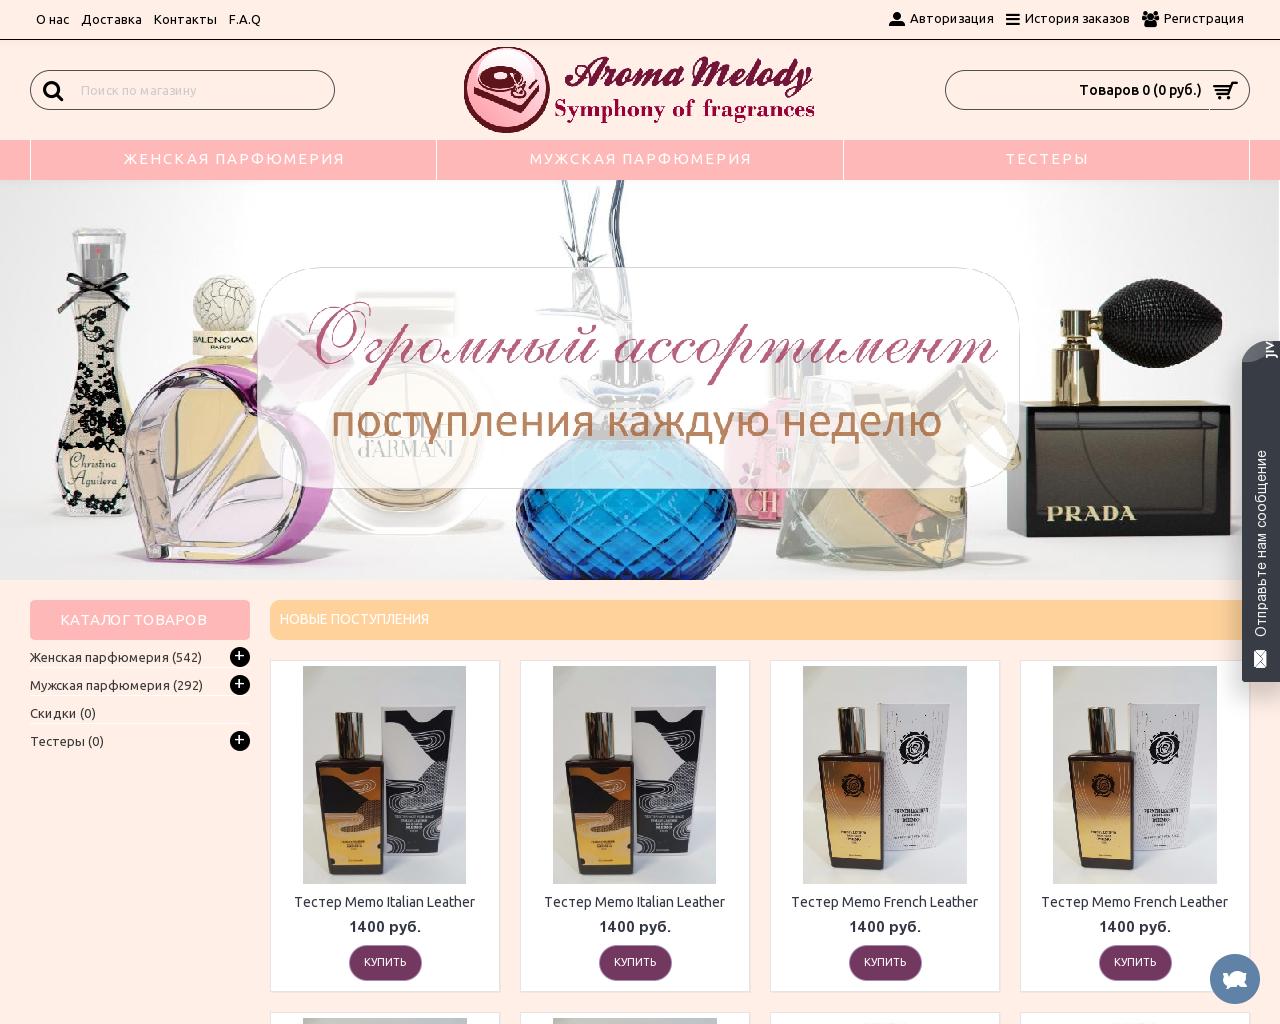 Изображение сайта aromamelody.ru в разрешении 1280x1024